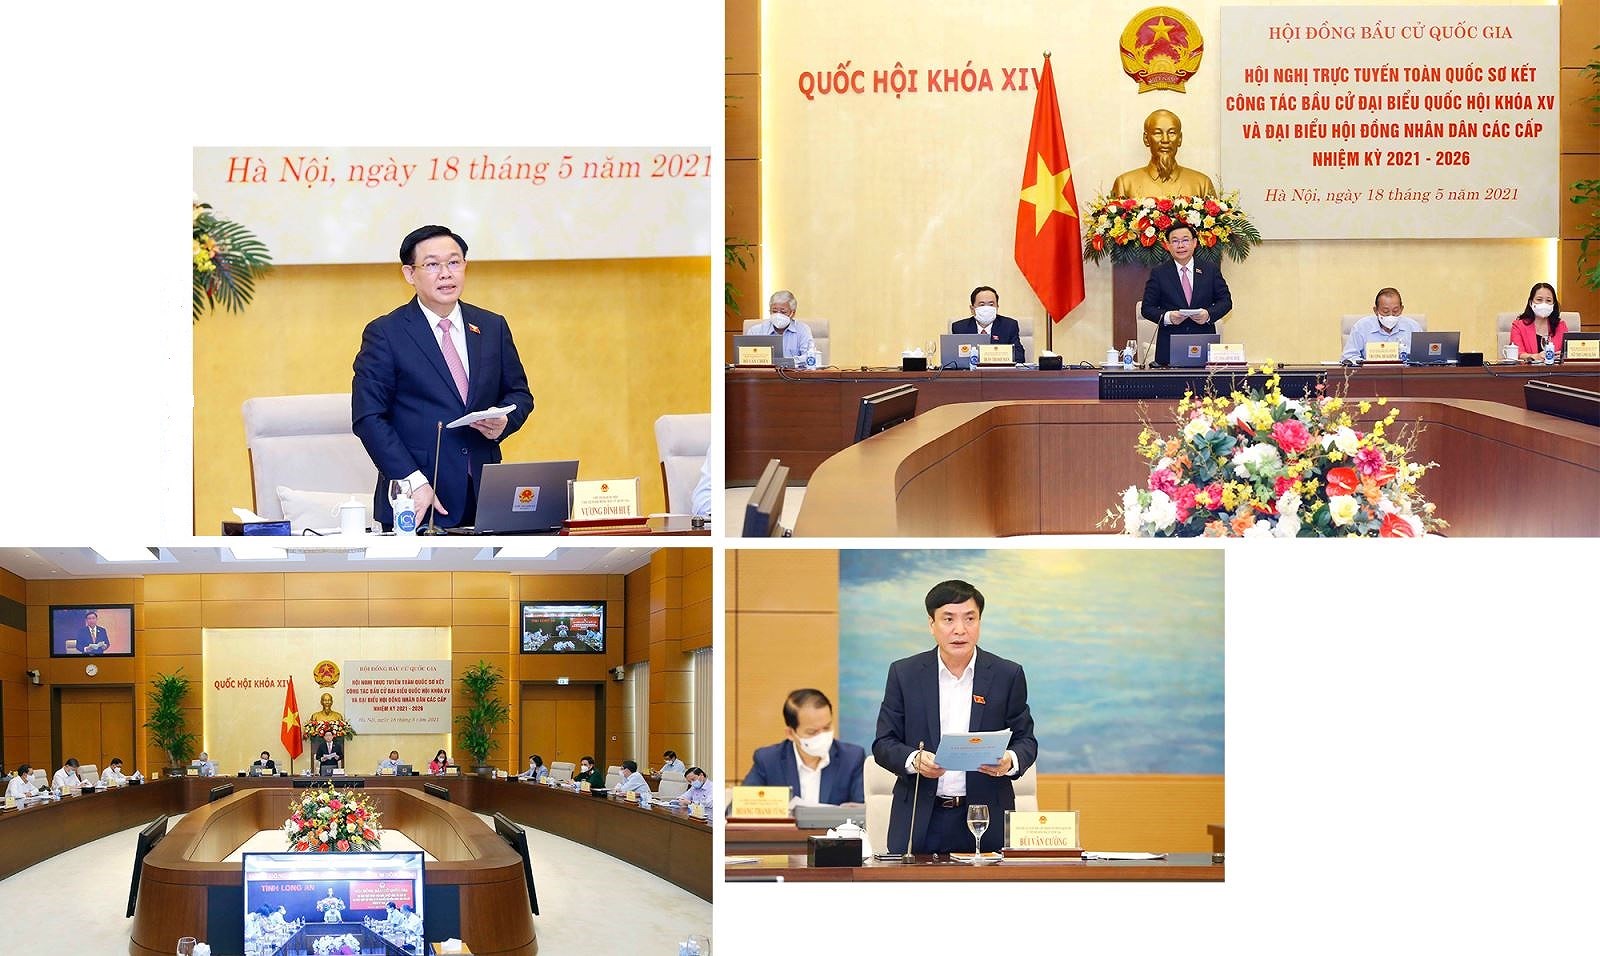 Exito de las elecciones legislativas en Vietnam gracias al poder del pueblo hinh anh 6